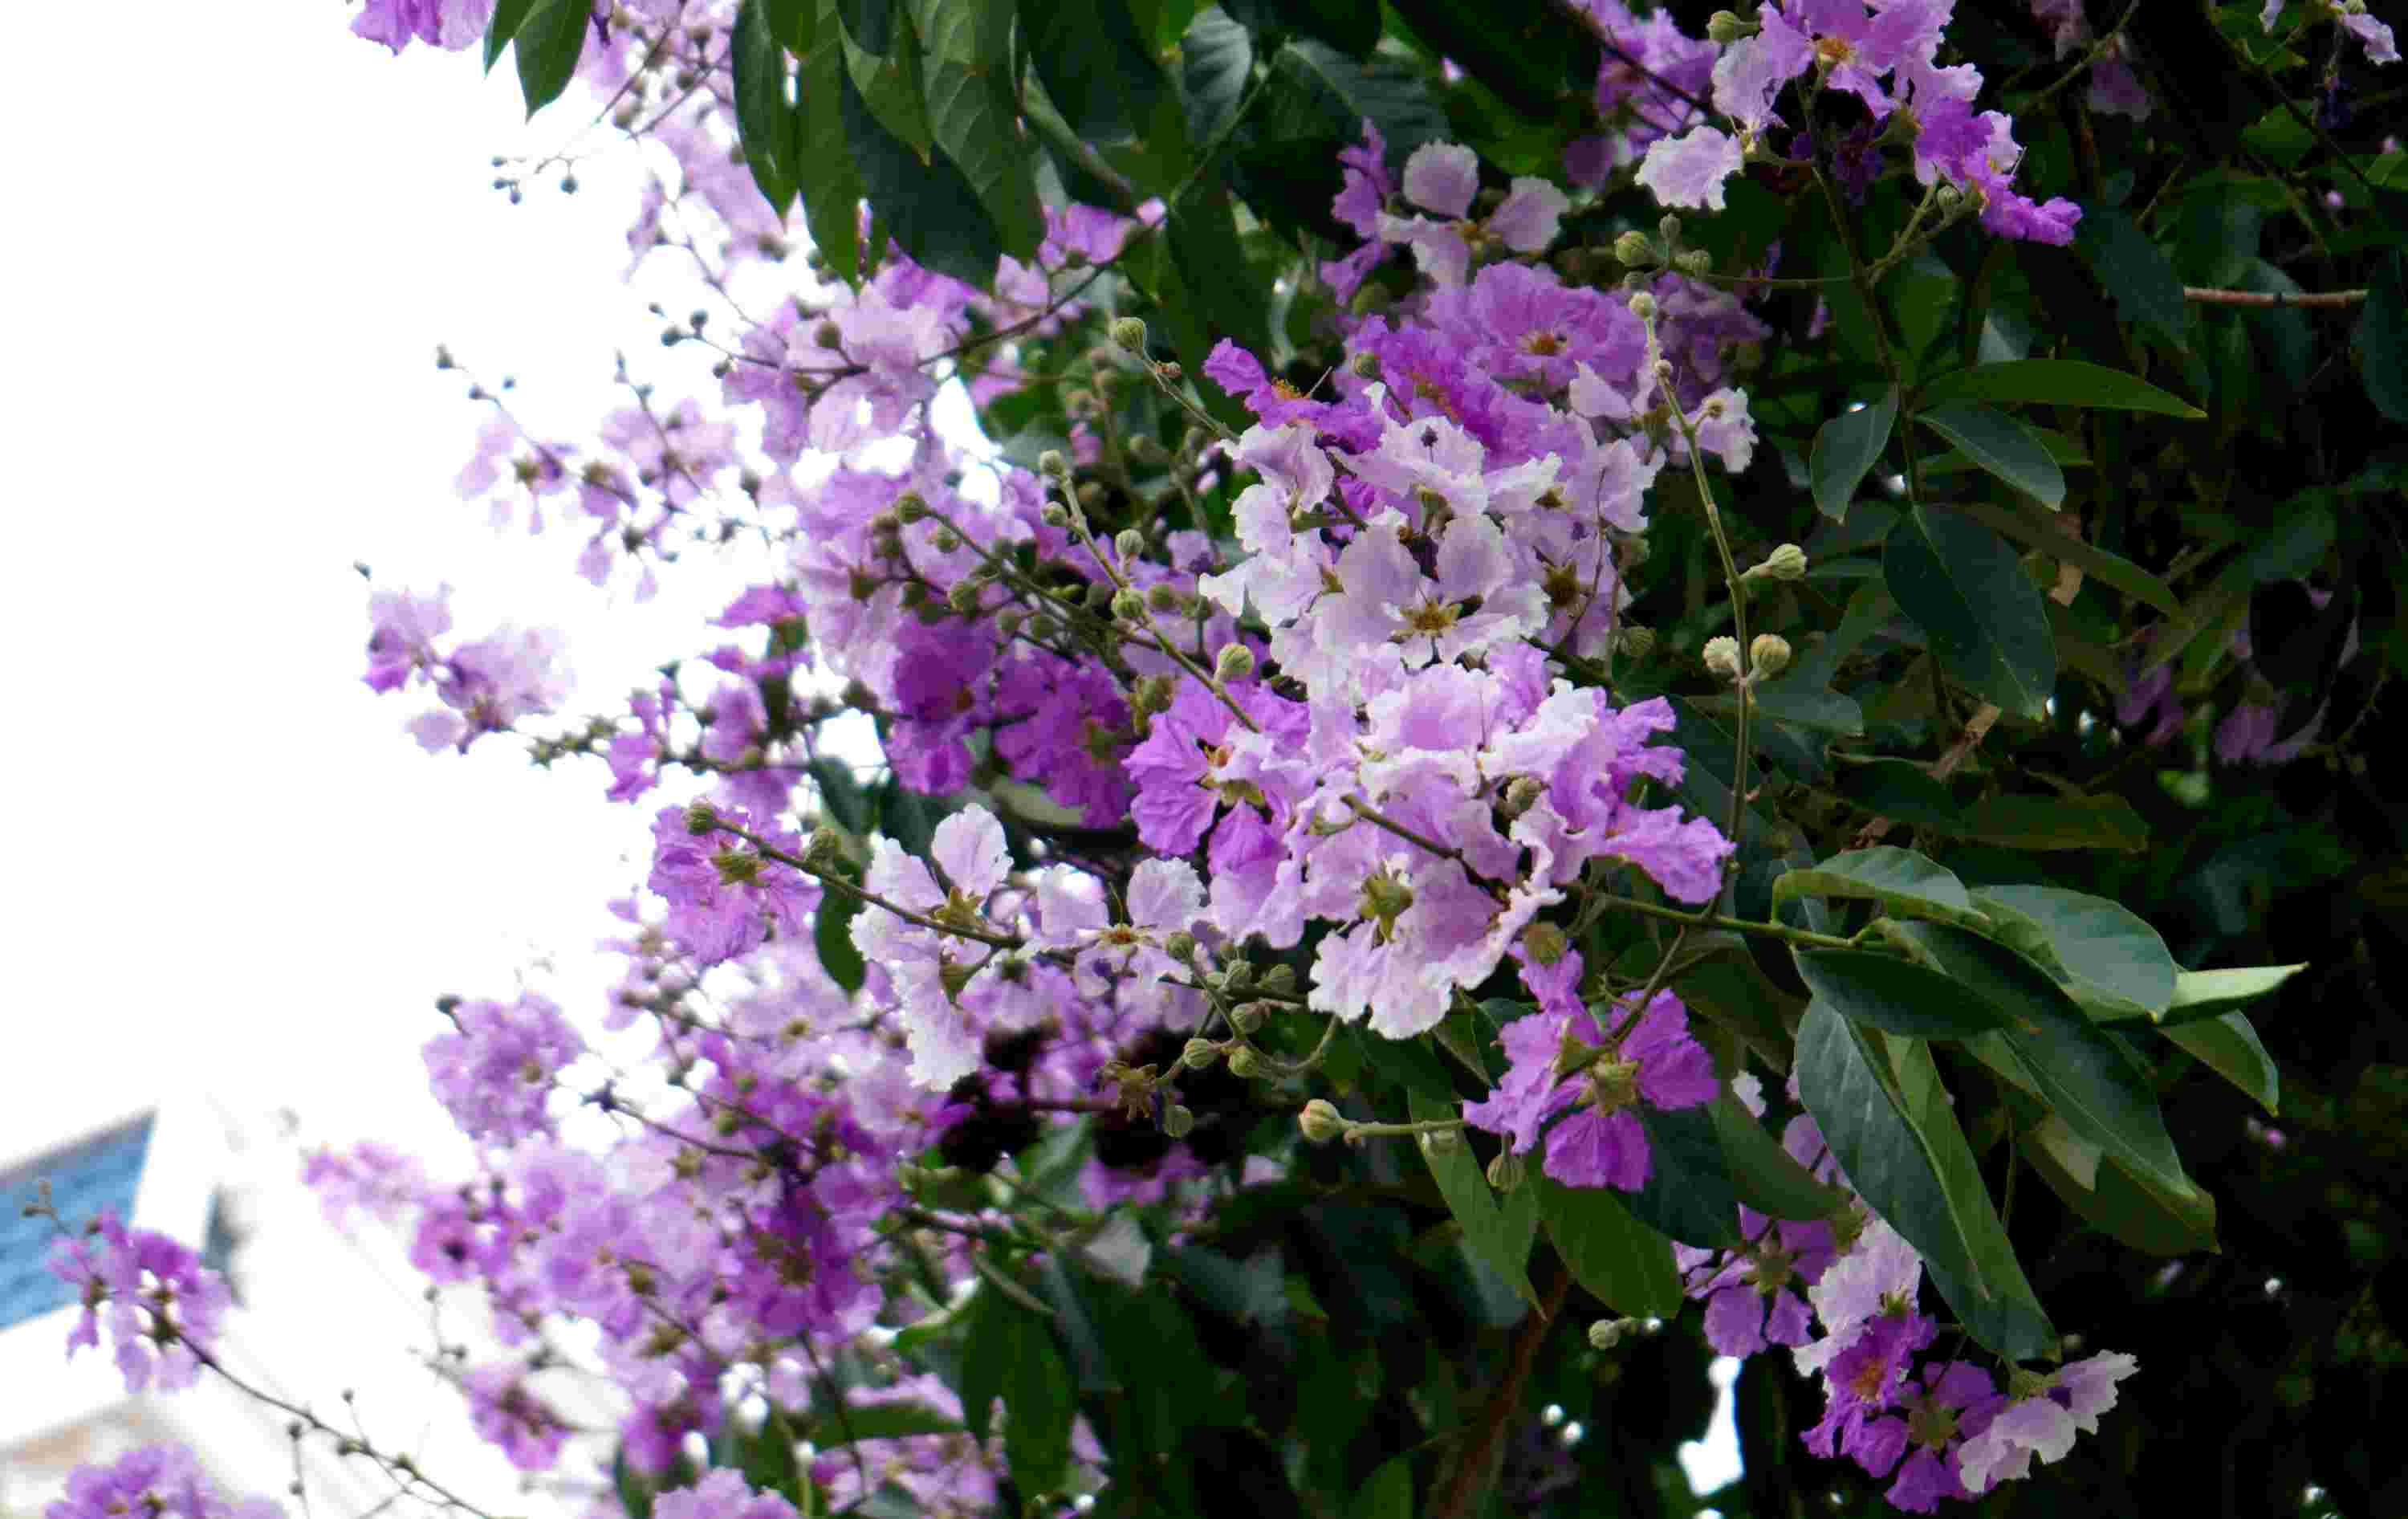 Bằng lăng nổi bật với những bông hoa lớn mọc thành chùm dài từ 20-40 cm, có mùi thơm nhẹ, đẹp và rực rỡ màu sắc. Màu của hoa thường là tím đậm hoặc tím hồng, cánh hoa mỏng hình bầu dục, có nhị vàng.